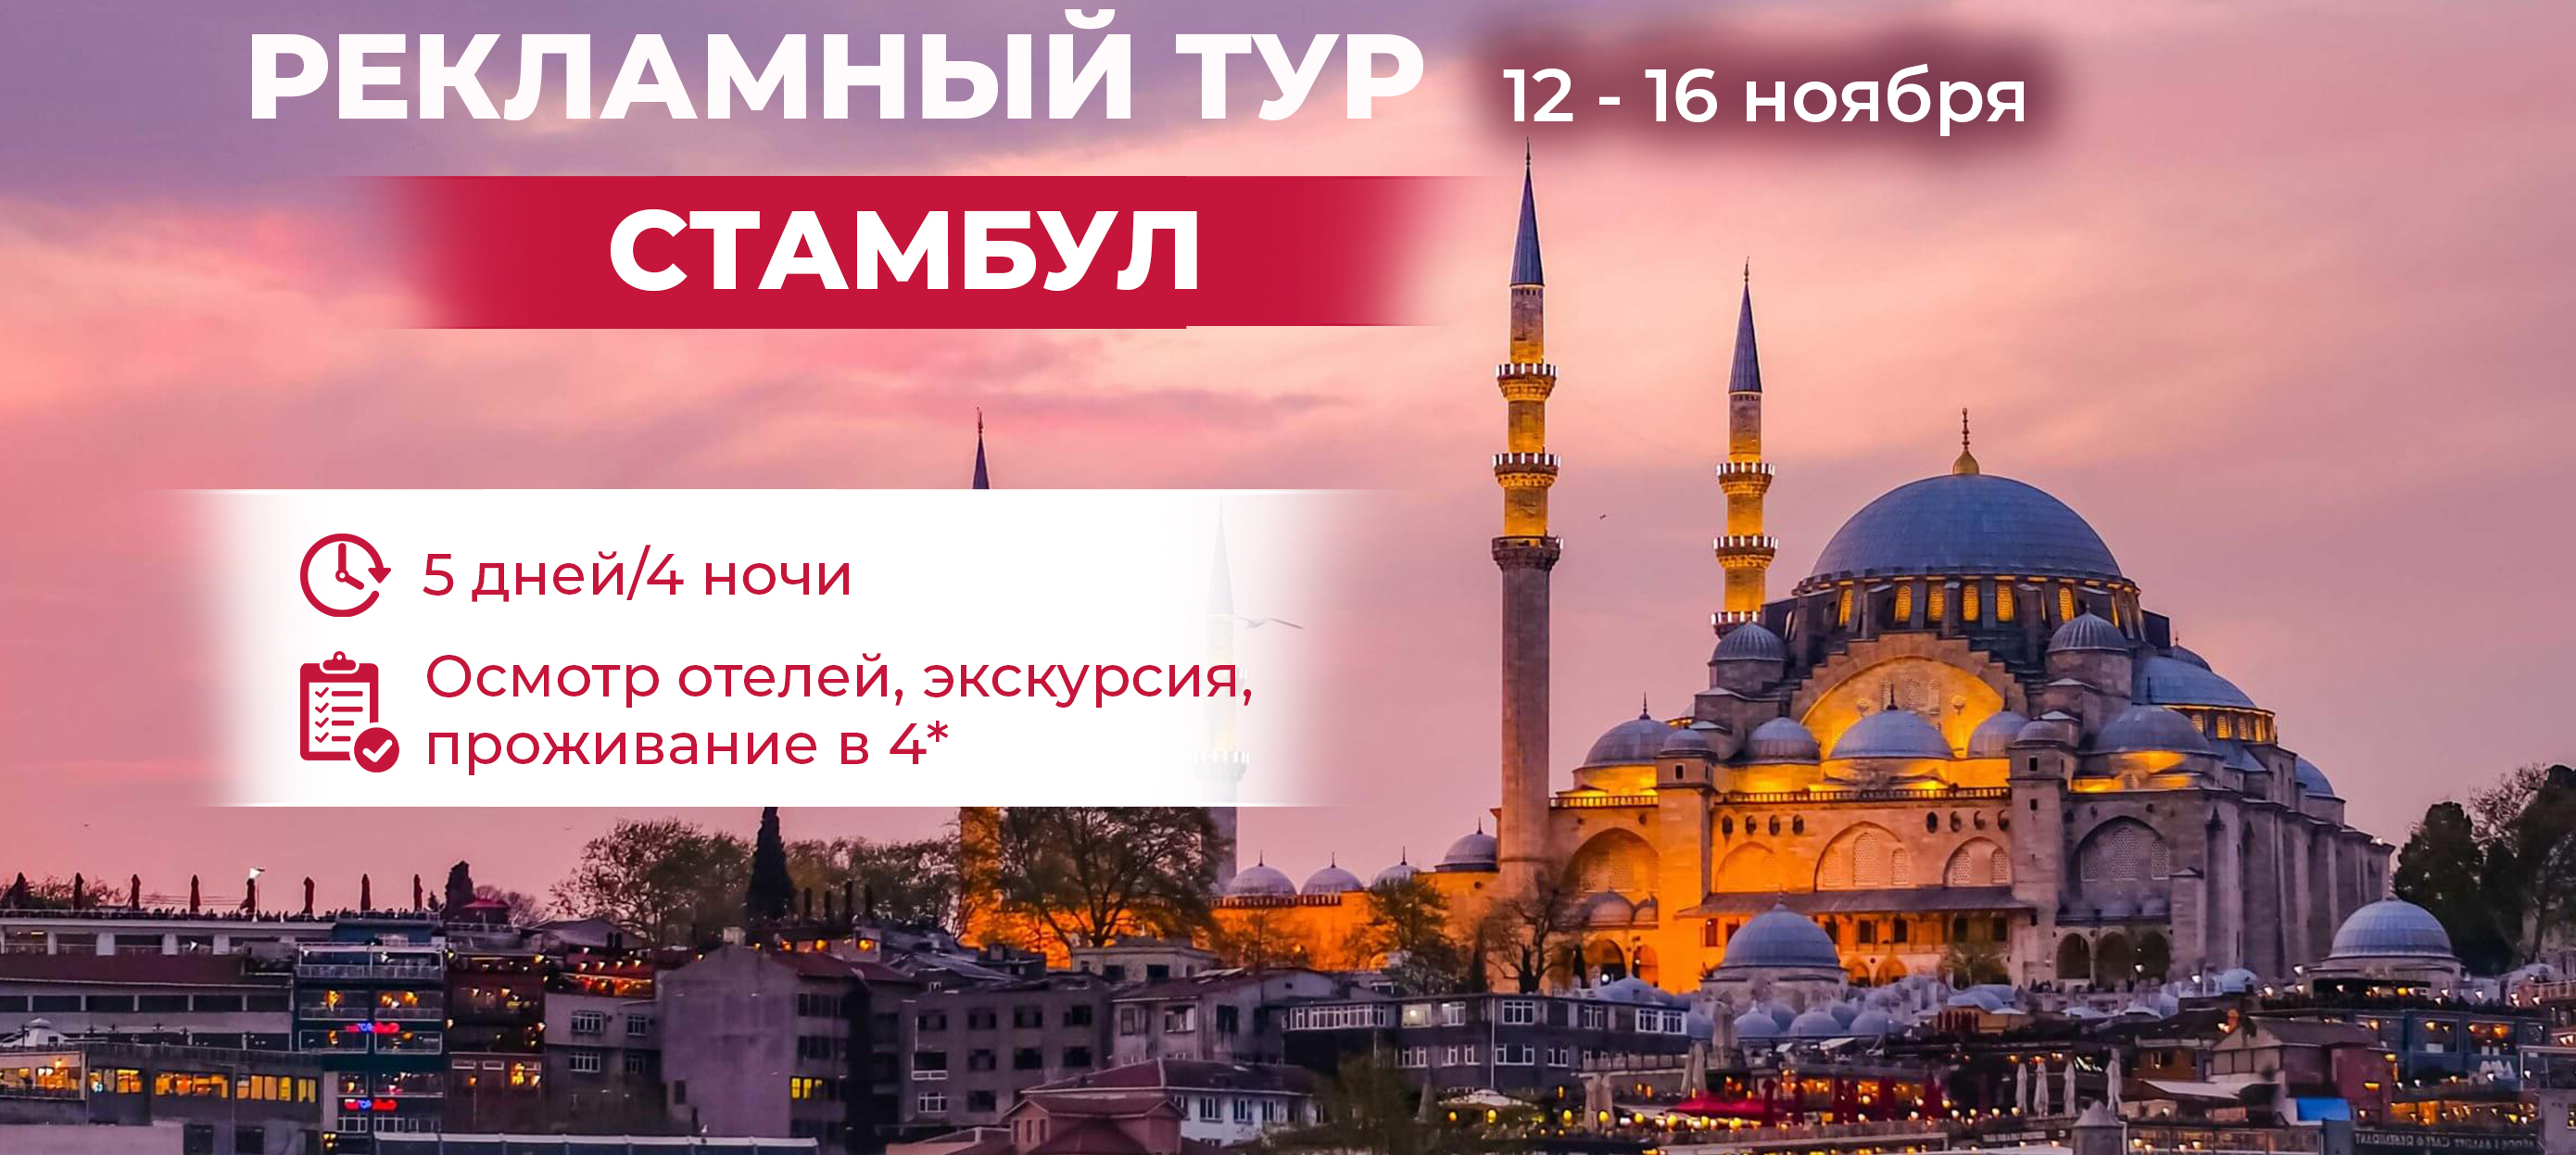 Экскурсии в стамбуле на русском: как выбрать то, что нужно вам